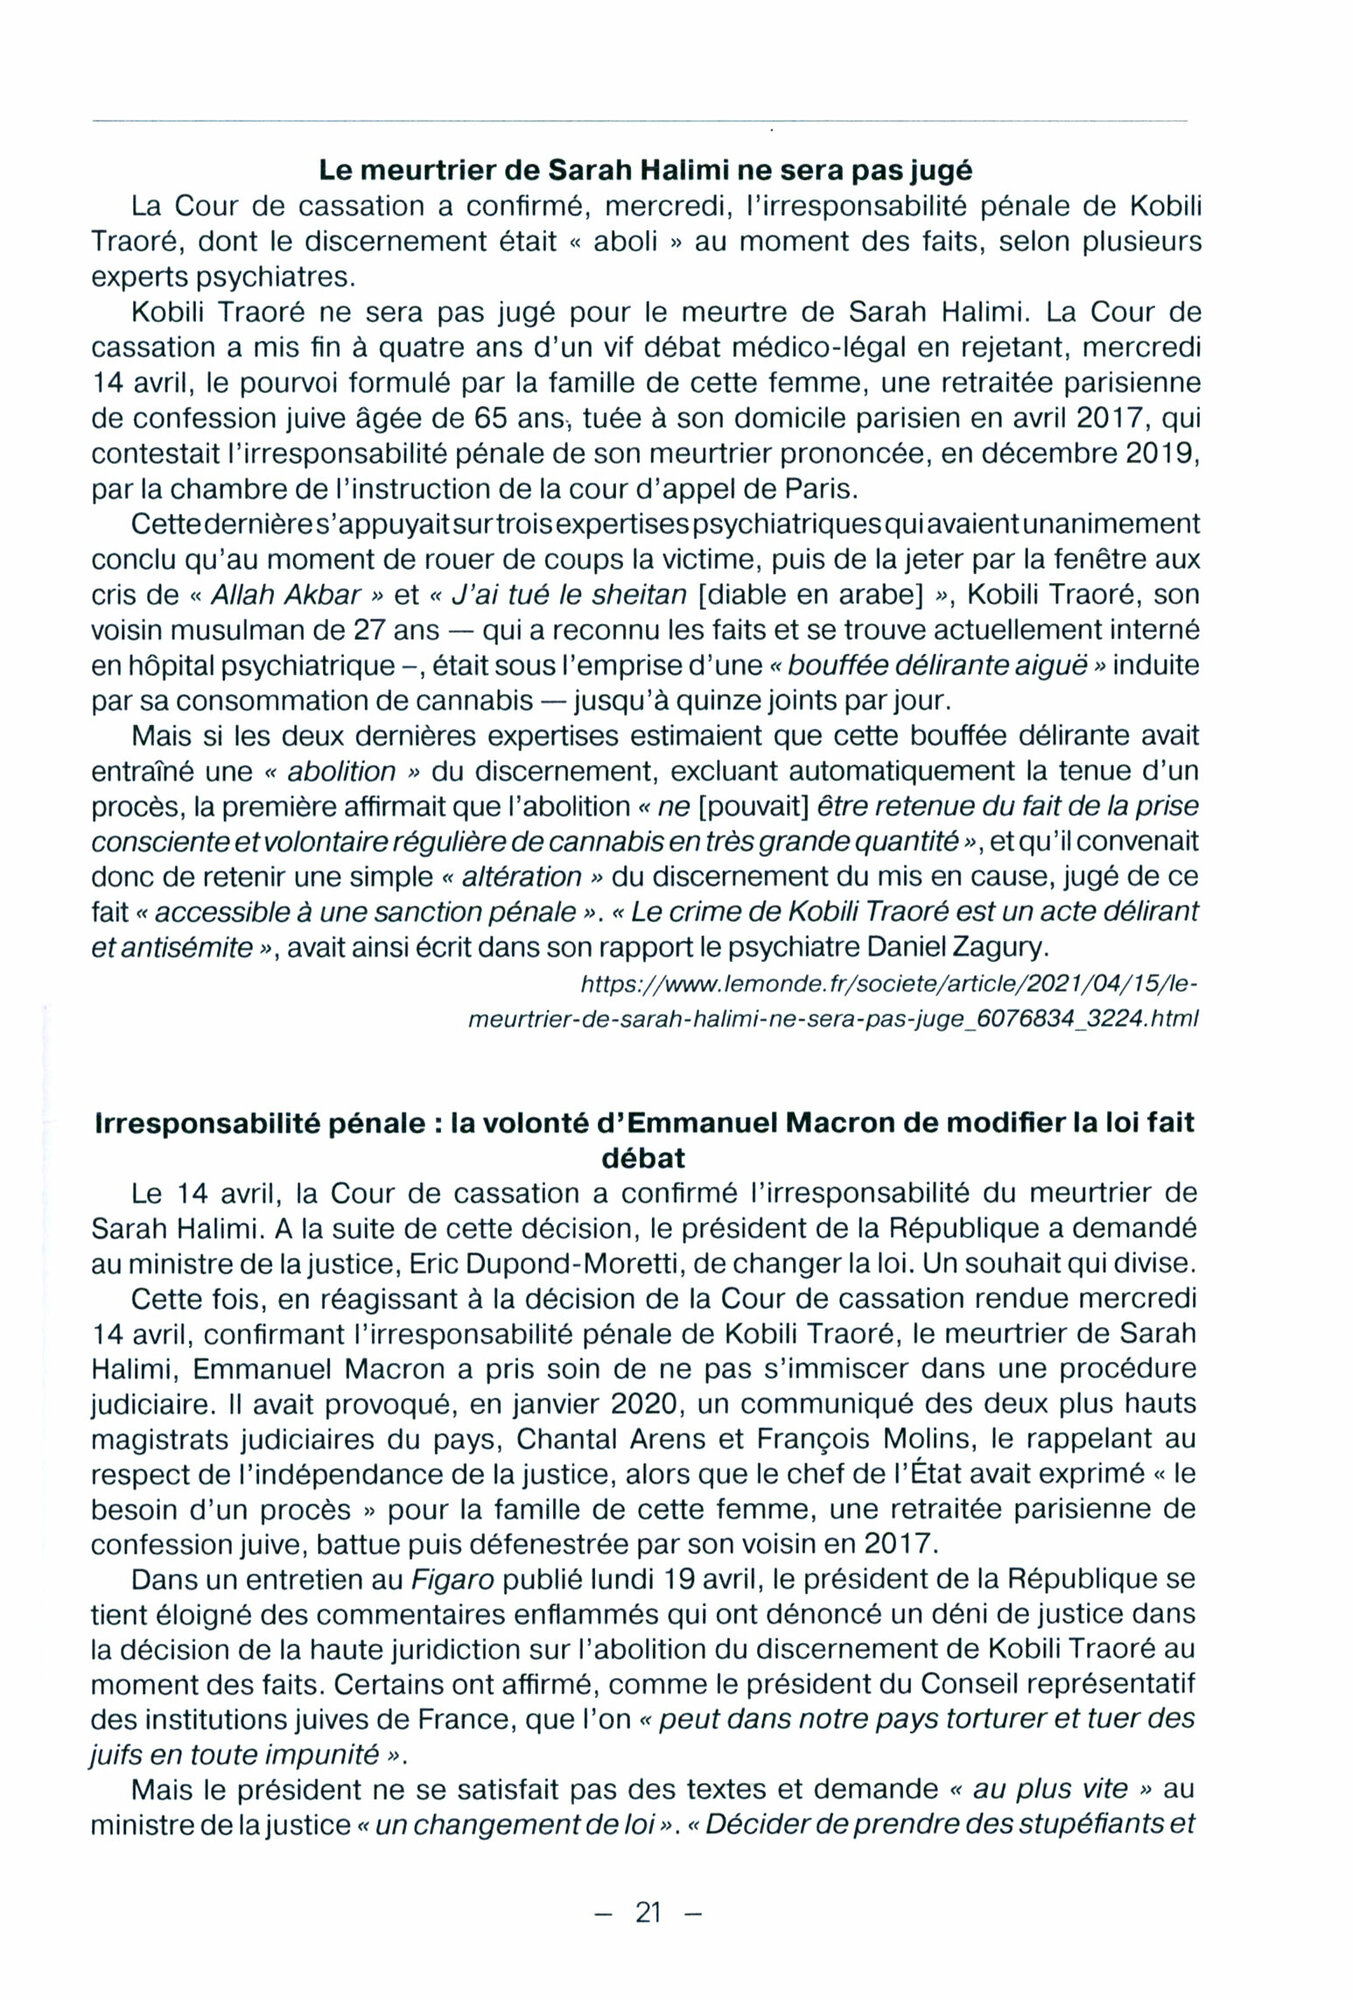 Французский язык для юристов. Уголовное право. Manuel de francais juridique. Droit penal. - фото №2